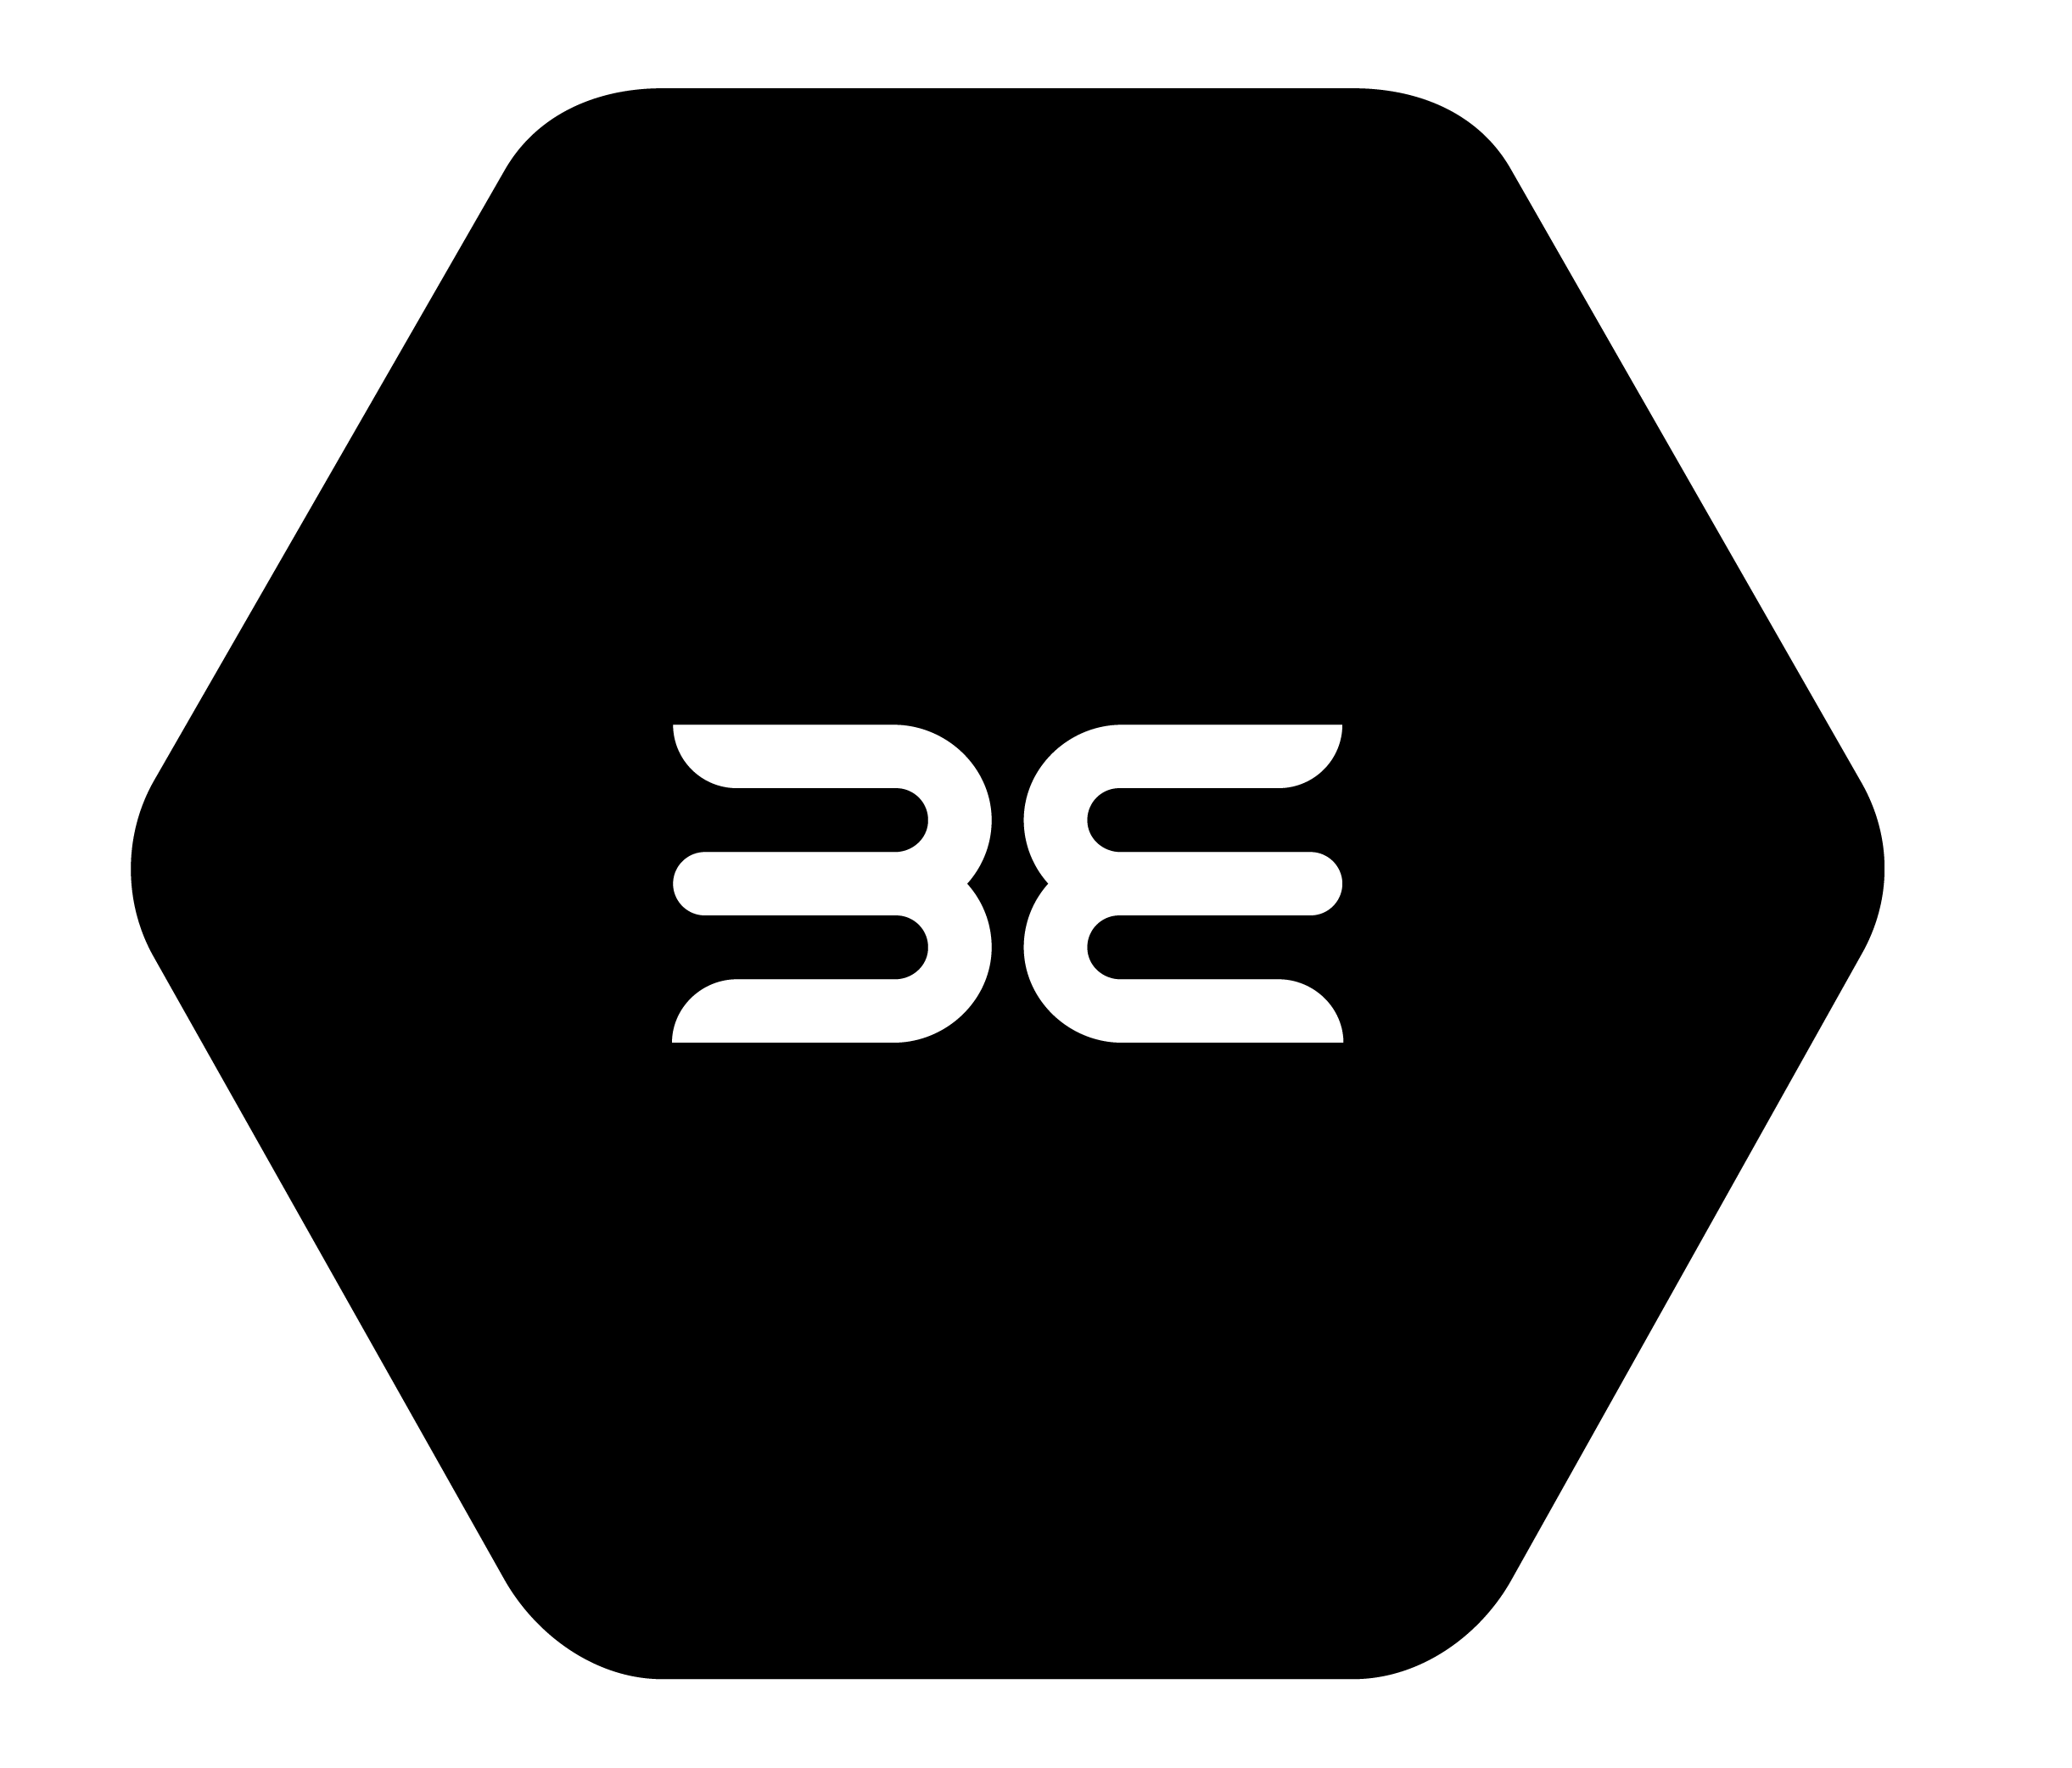 Be Logo - BinaryEdge